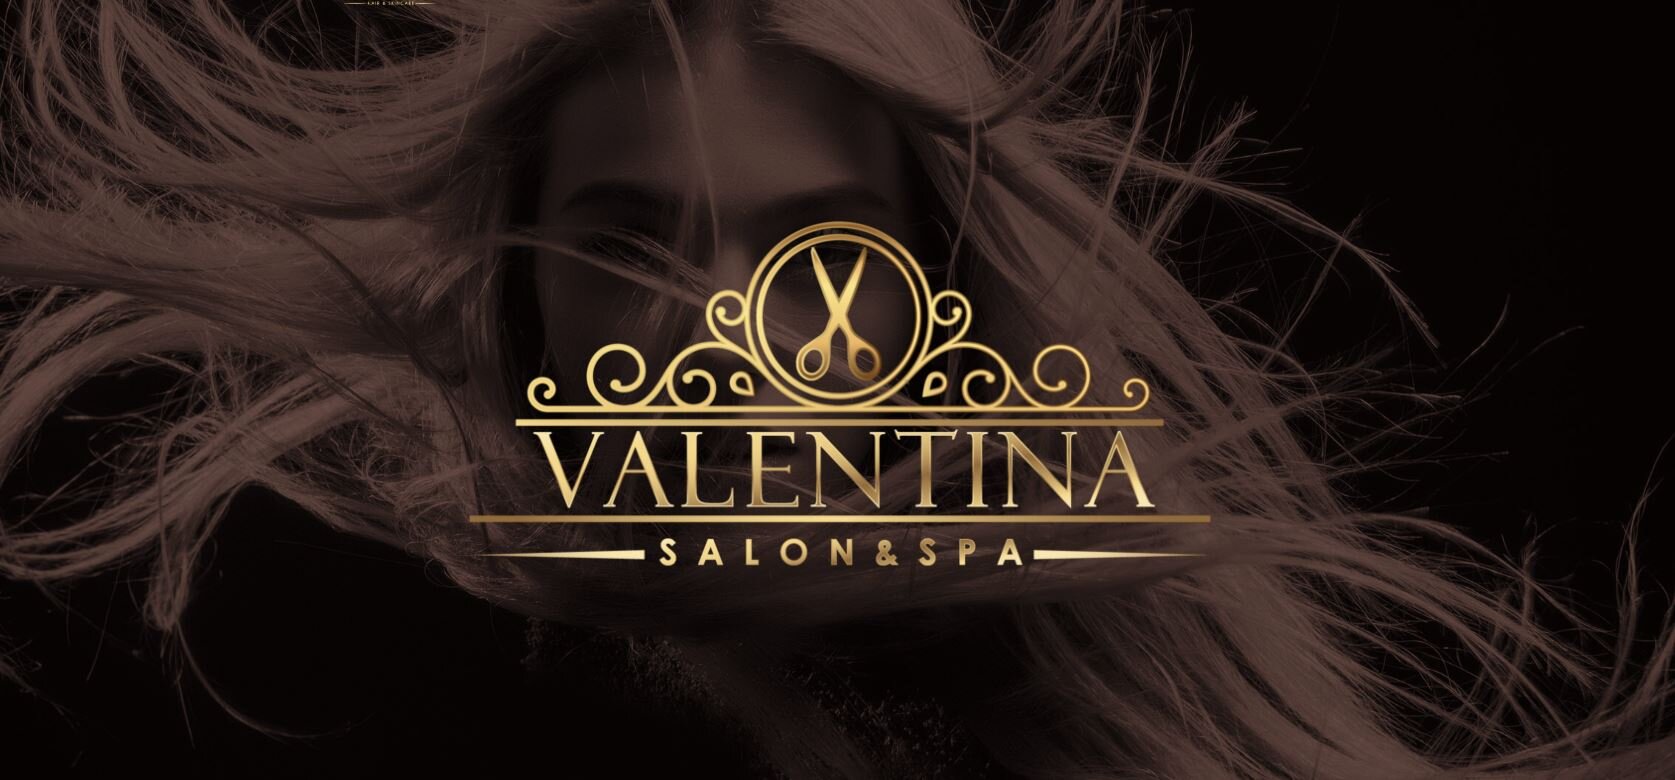 header sample Valentina.JPG